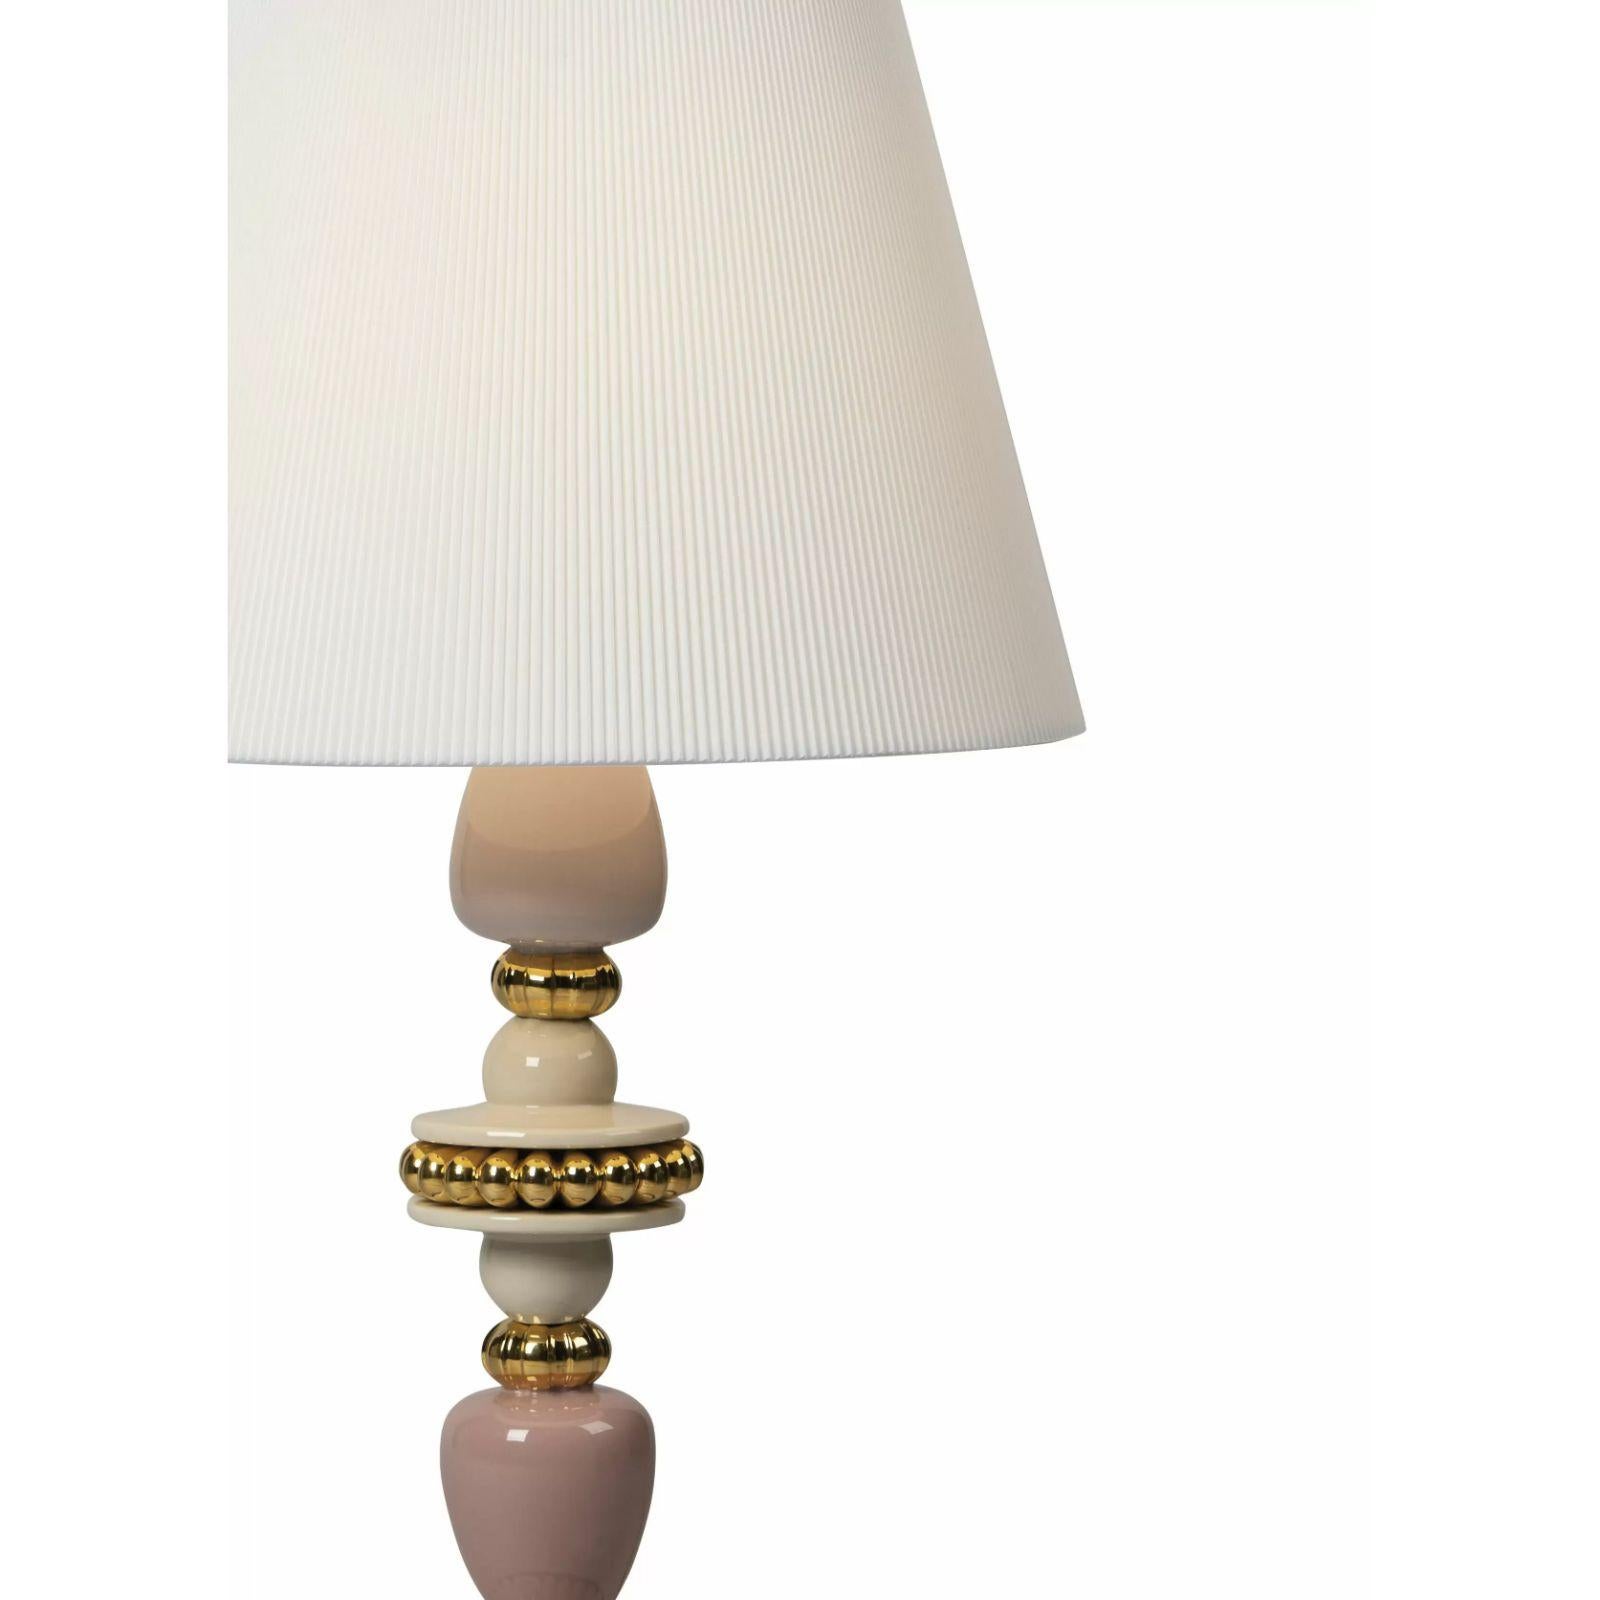 Lampe de table en porcelaine de la collection Firefly, inspirée par la lumière fascinante émise par les lucioles lors des chaudes nuits d'été. C'est ainsi qu'est née cette série de luminaires originaux basés sur des motifs végétaux.

Une pièce en